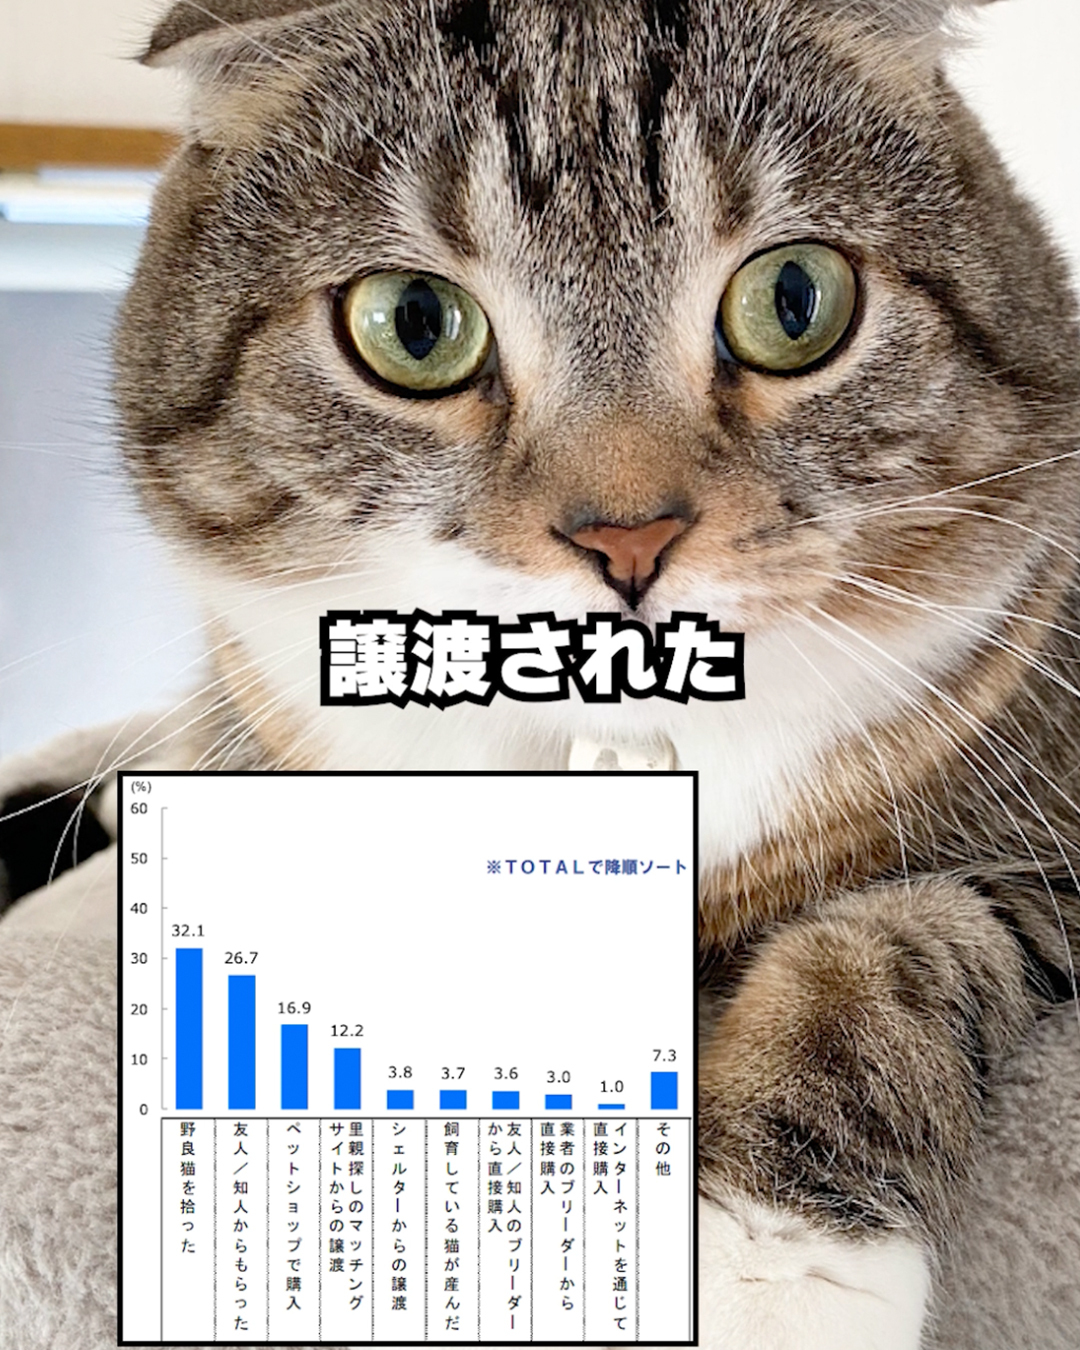 出典：https://petfood.or.jp/data/chart2022/index.html